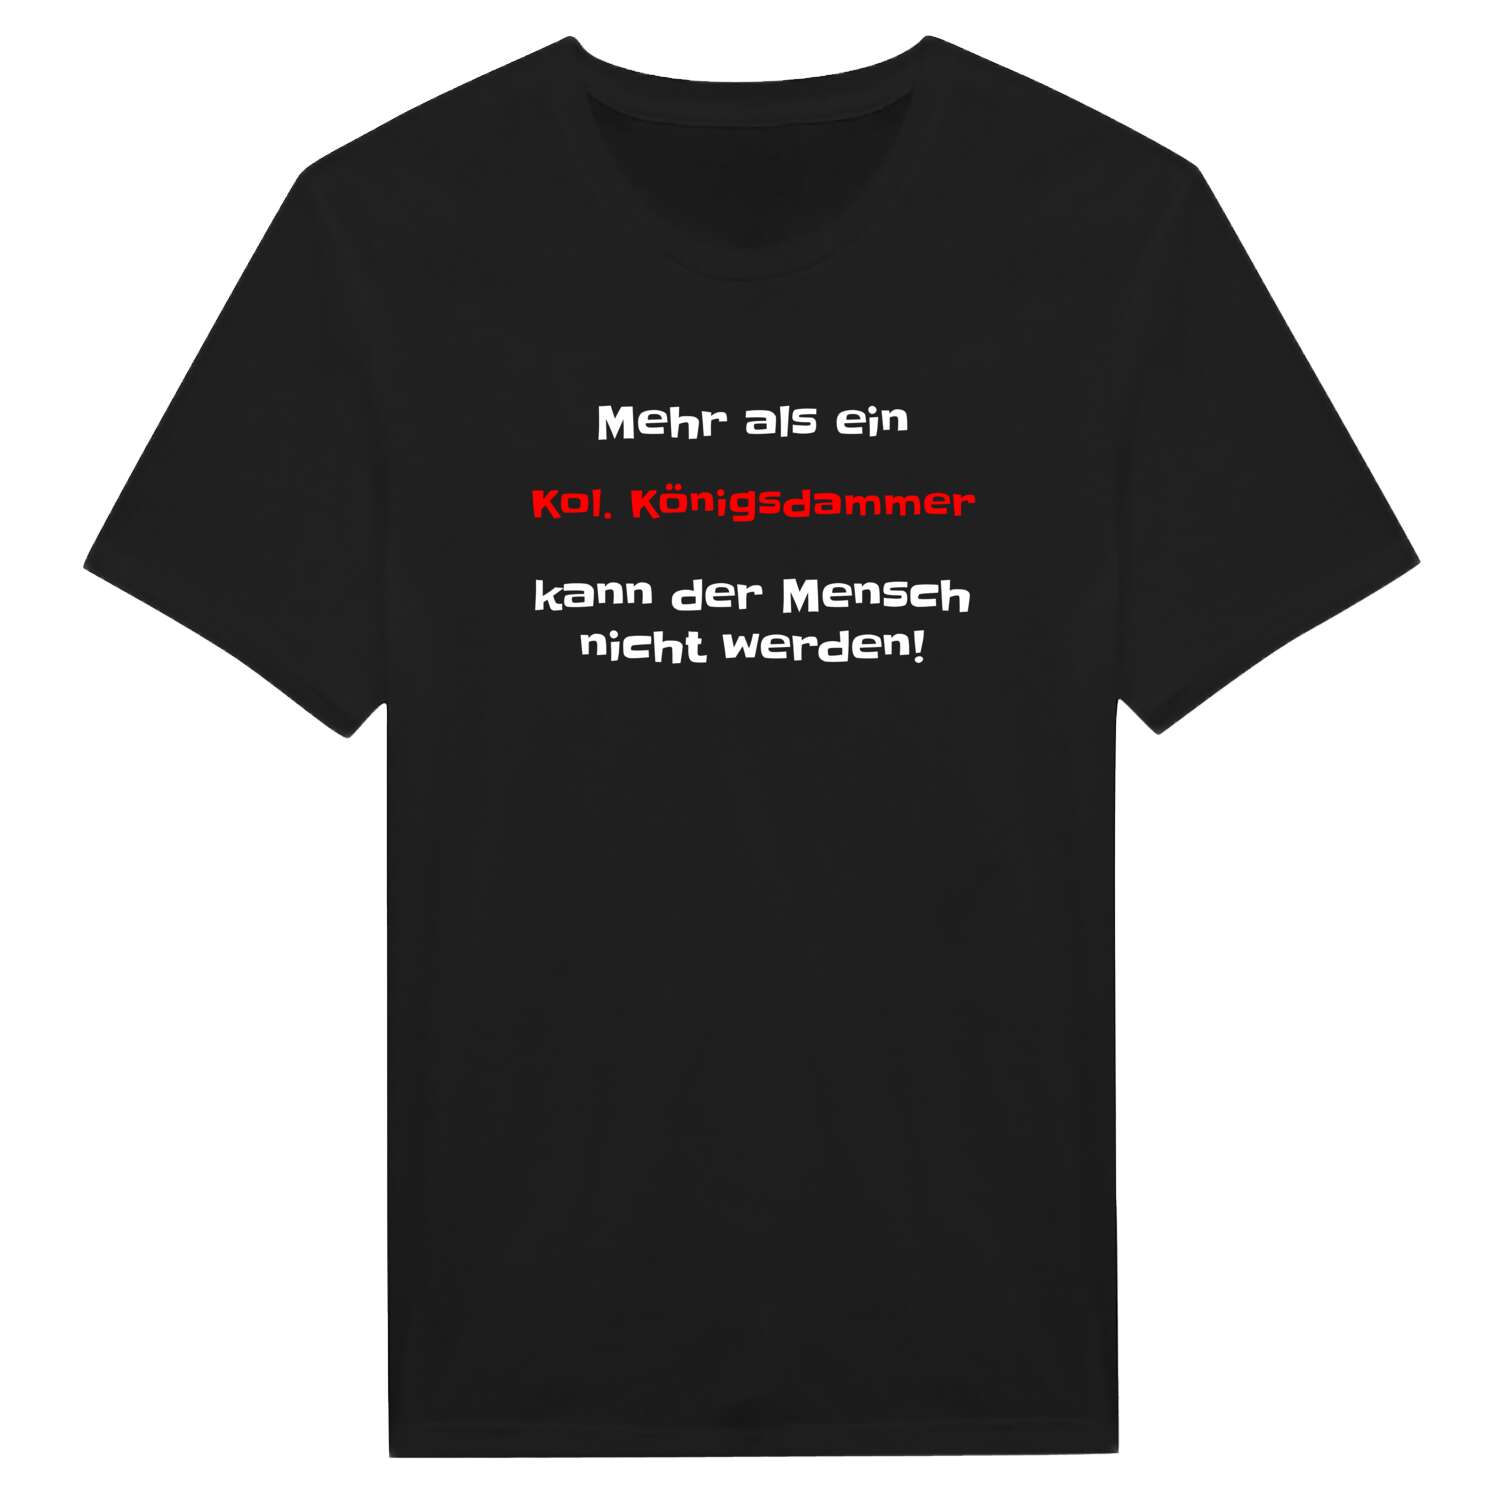 Kol. Königsdamm T-Shirt »Mehr als ein«